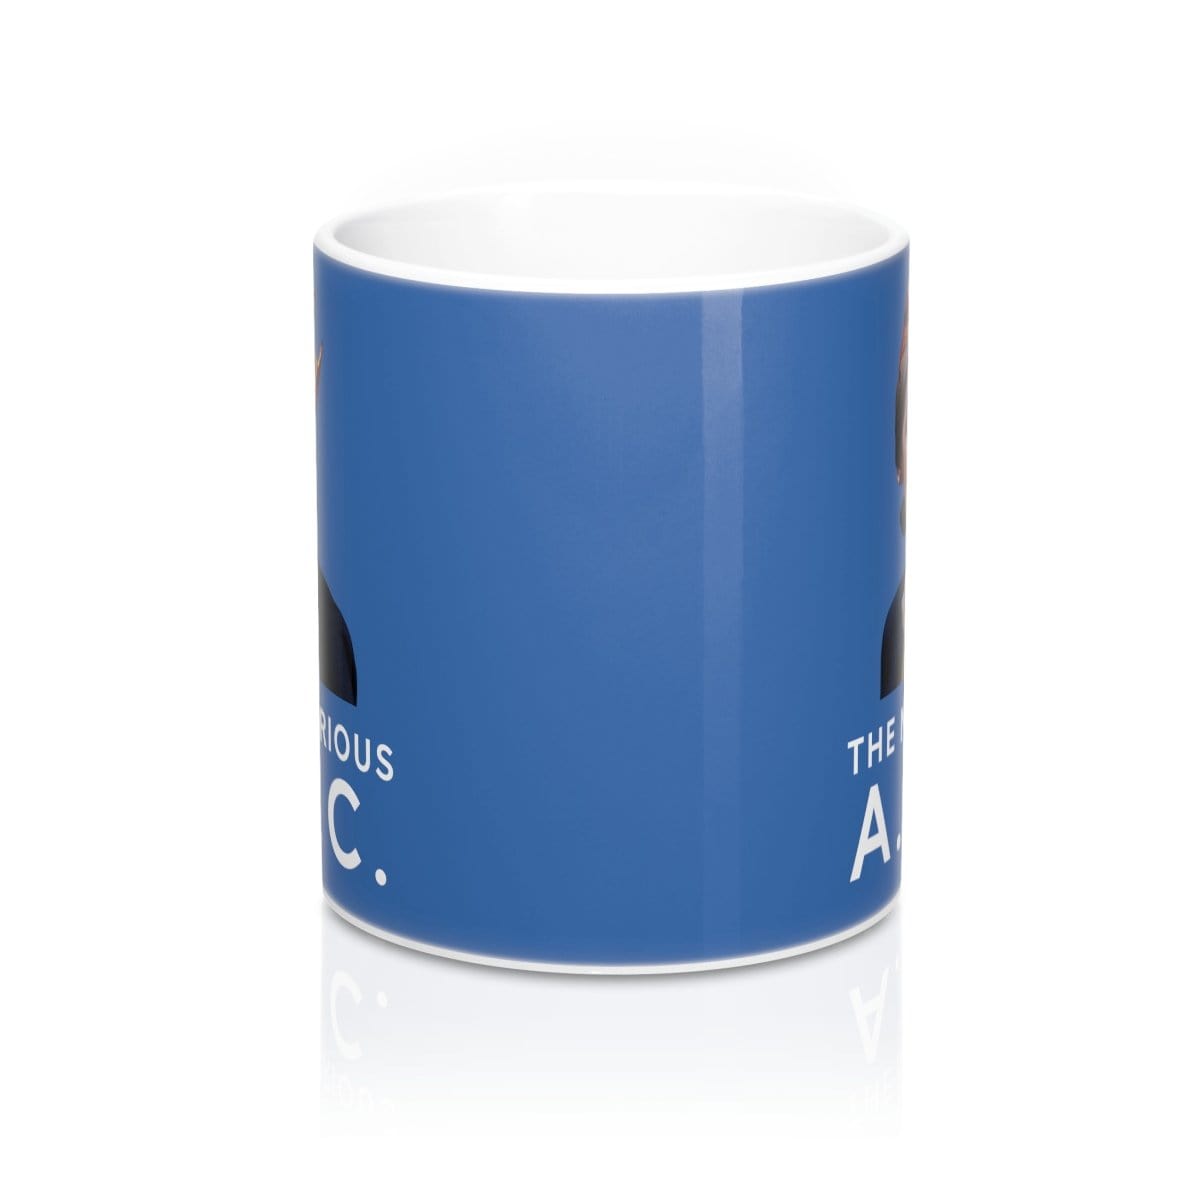 "The Notorious AOC" Coffee Mug 11oz - True Blue Gear